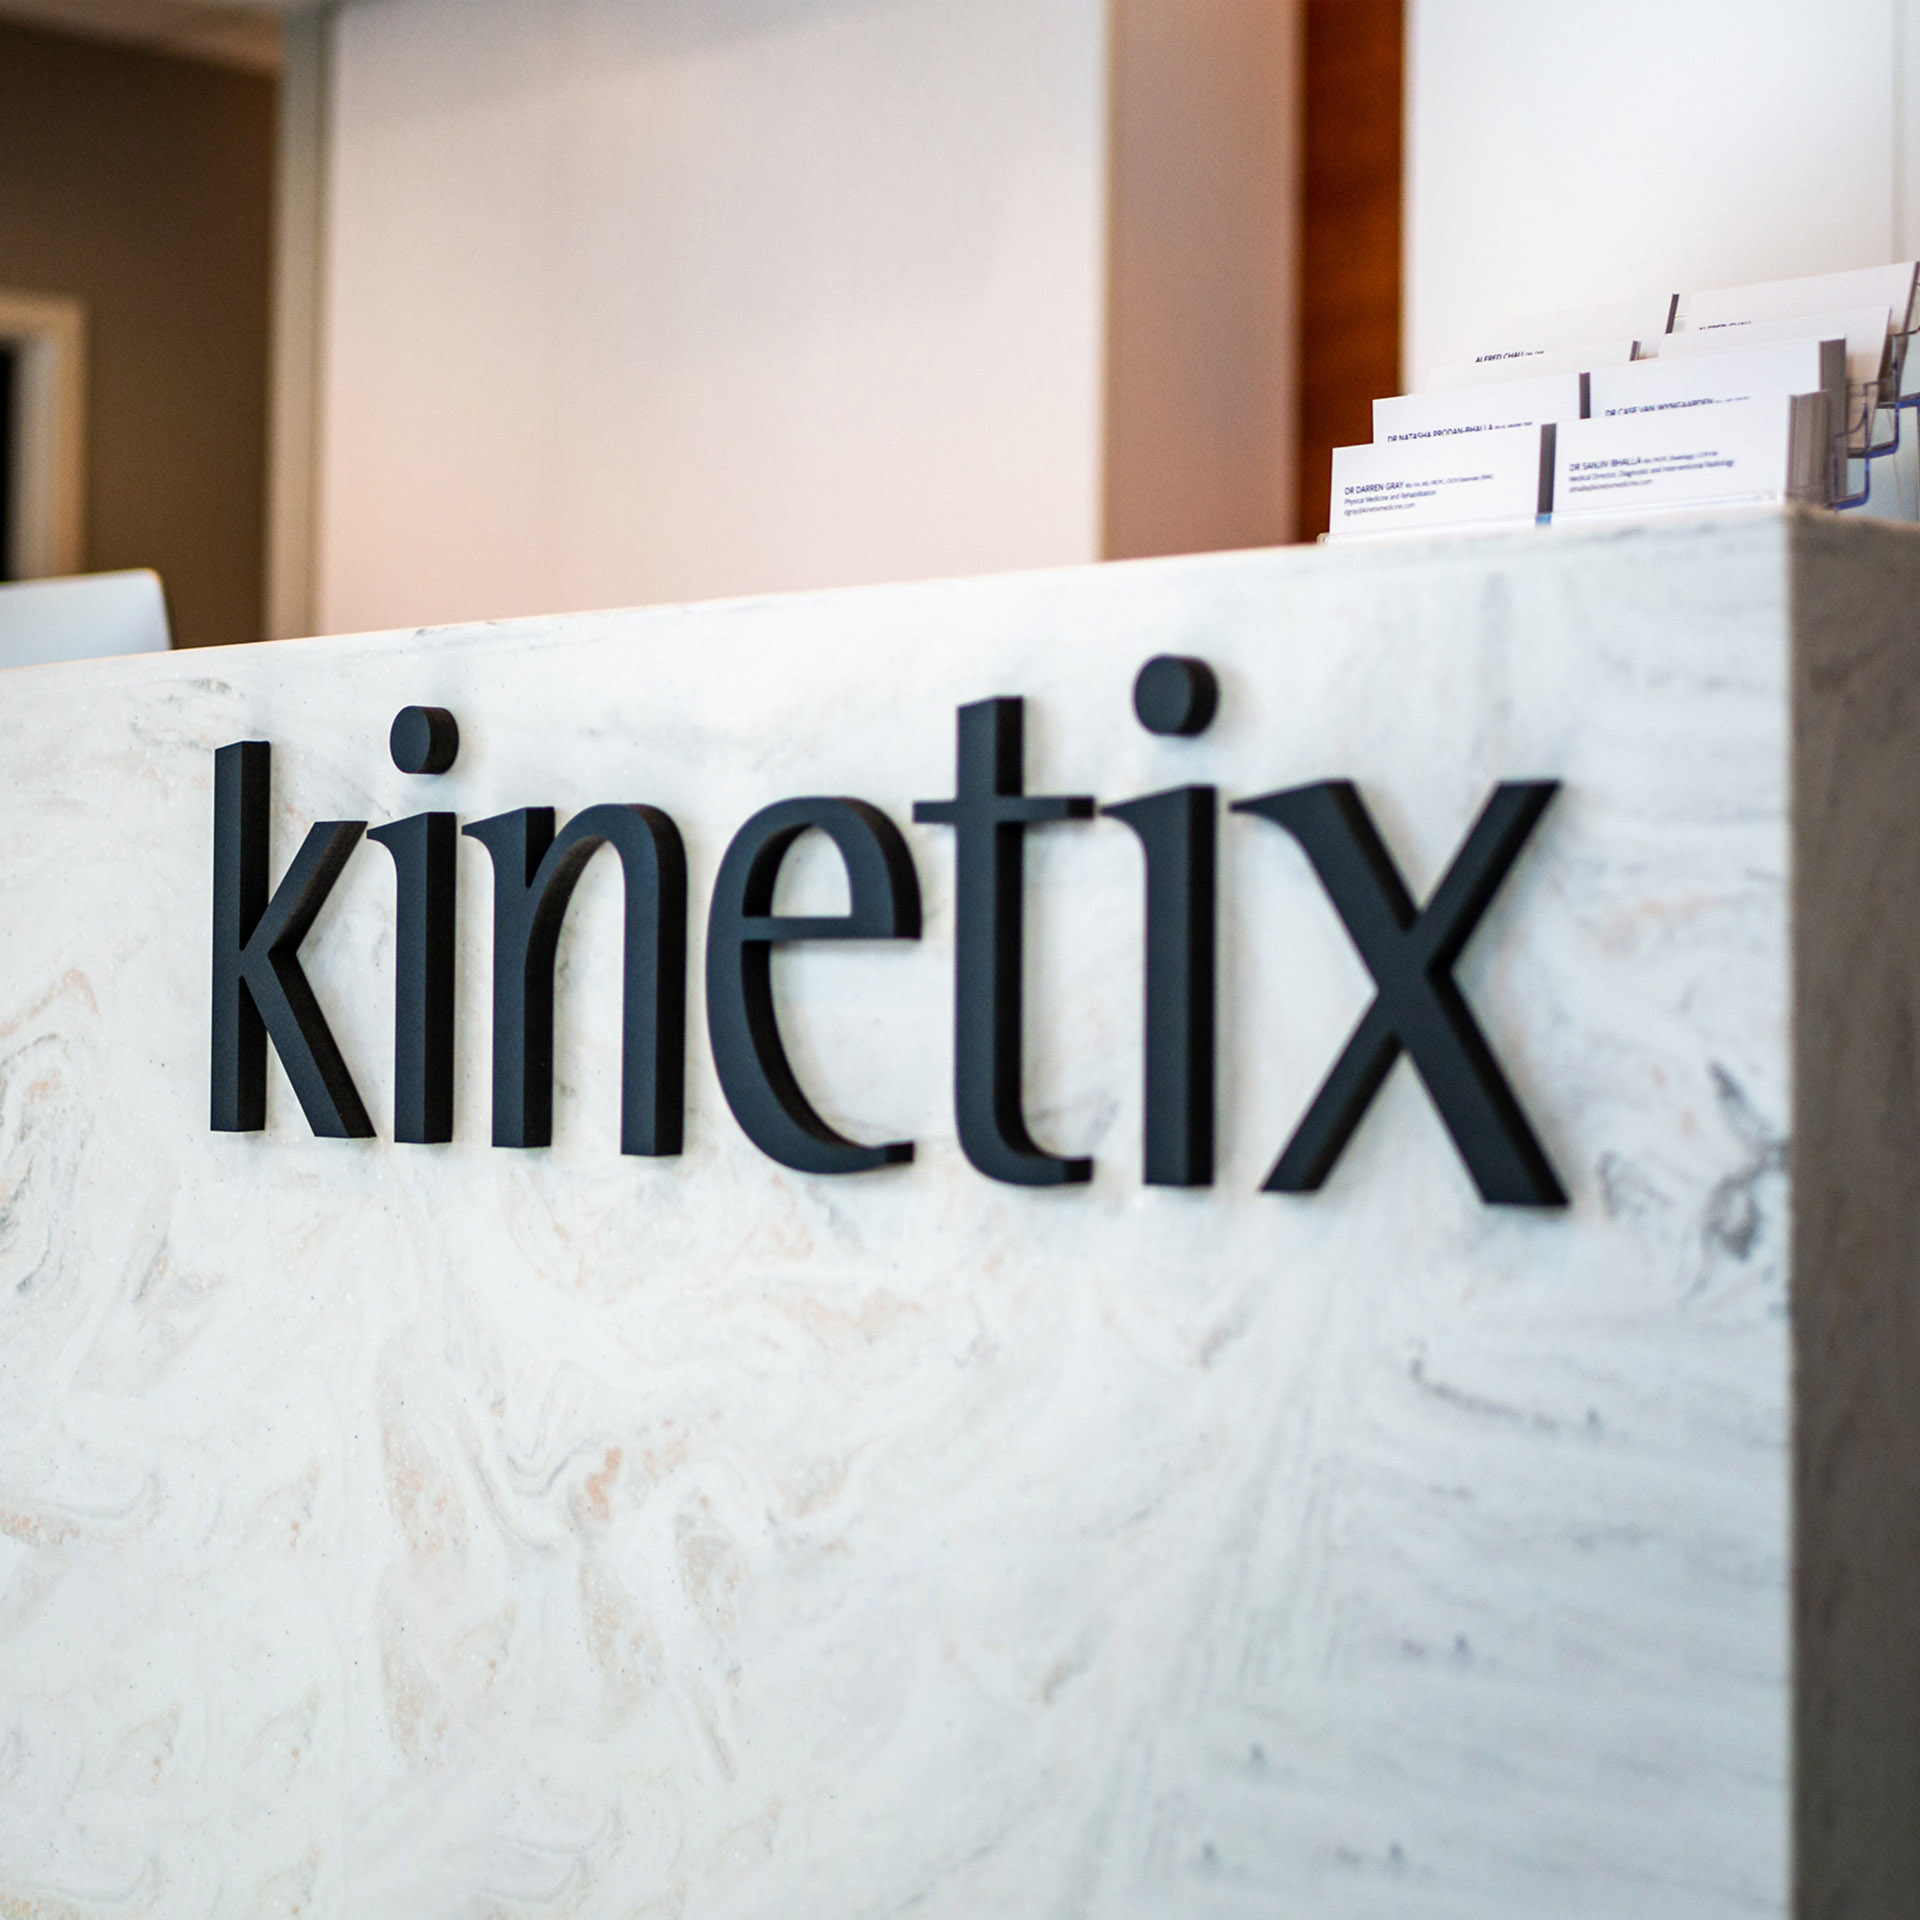 Kinetix: Integrated Orthopaedic Medicine Front Desk